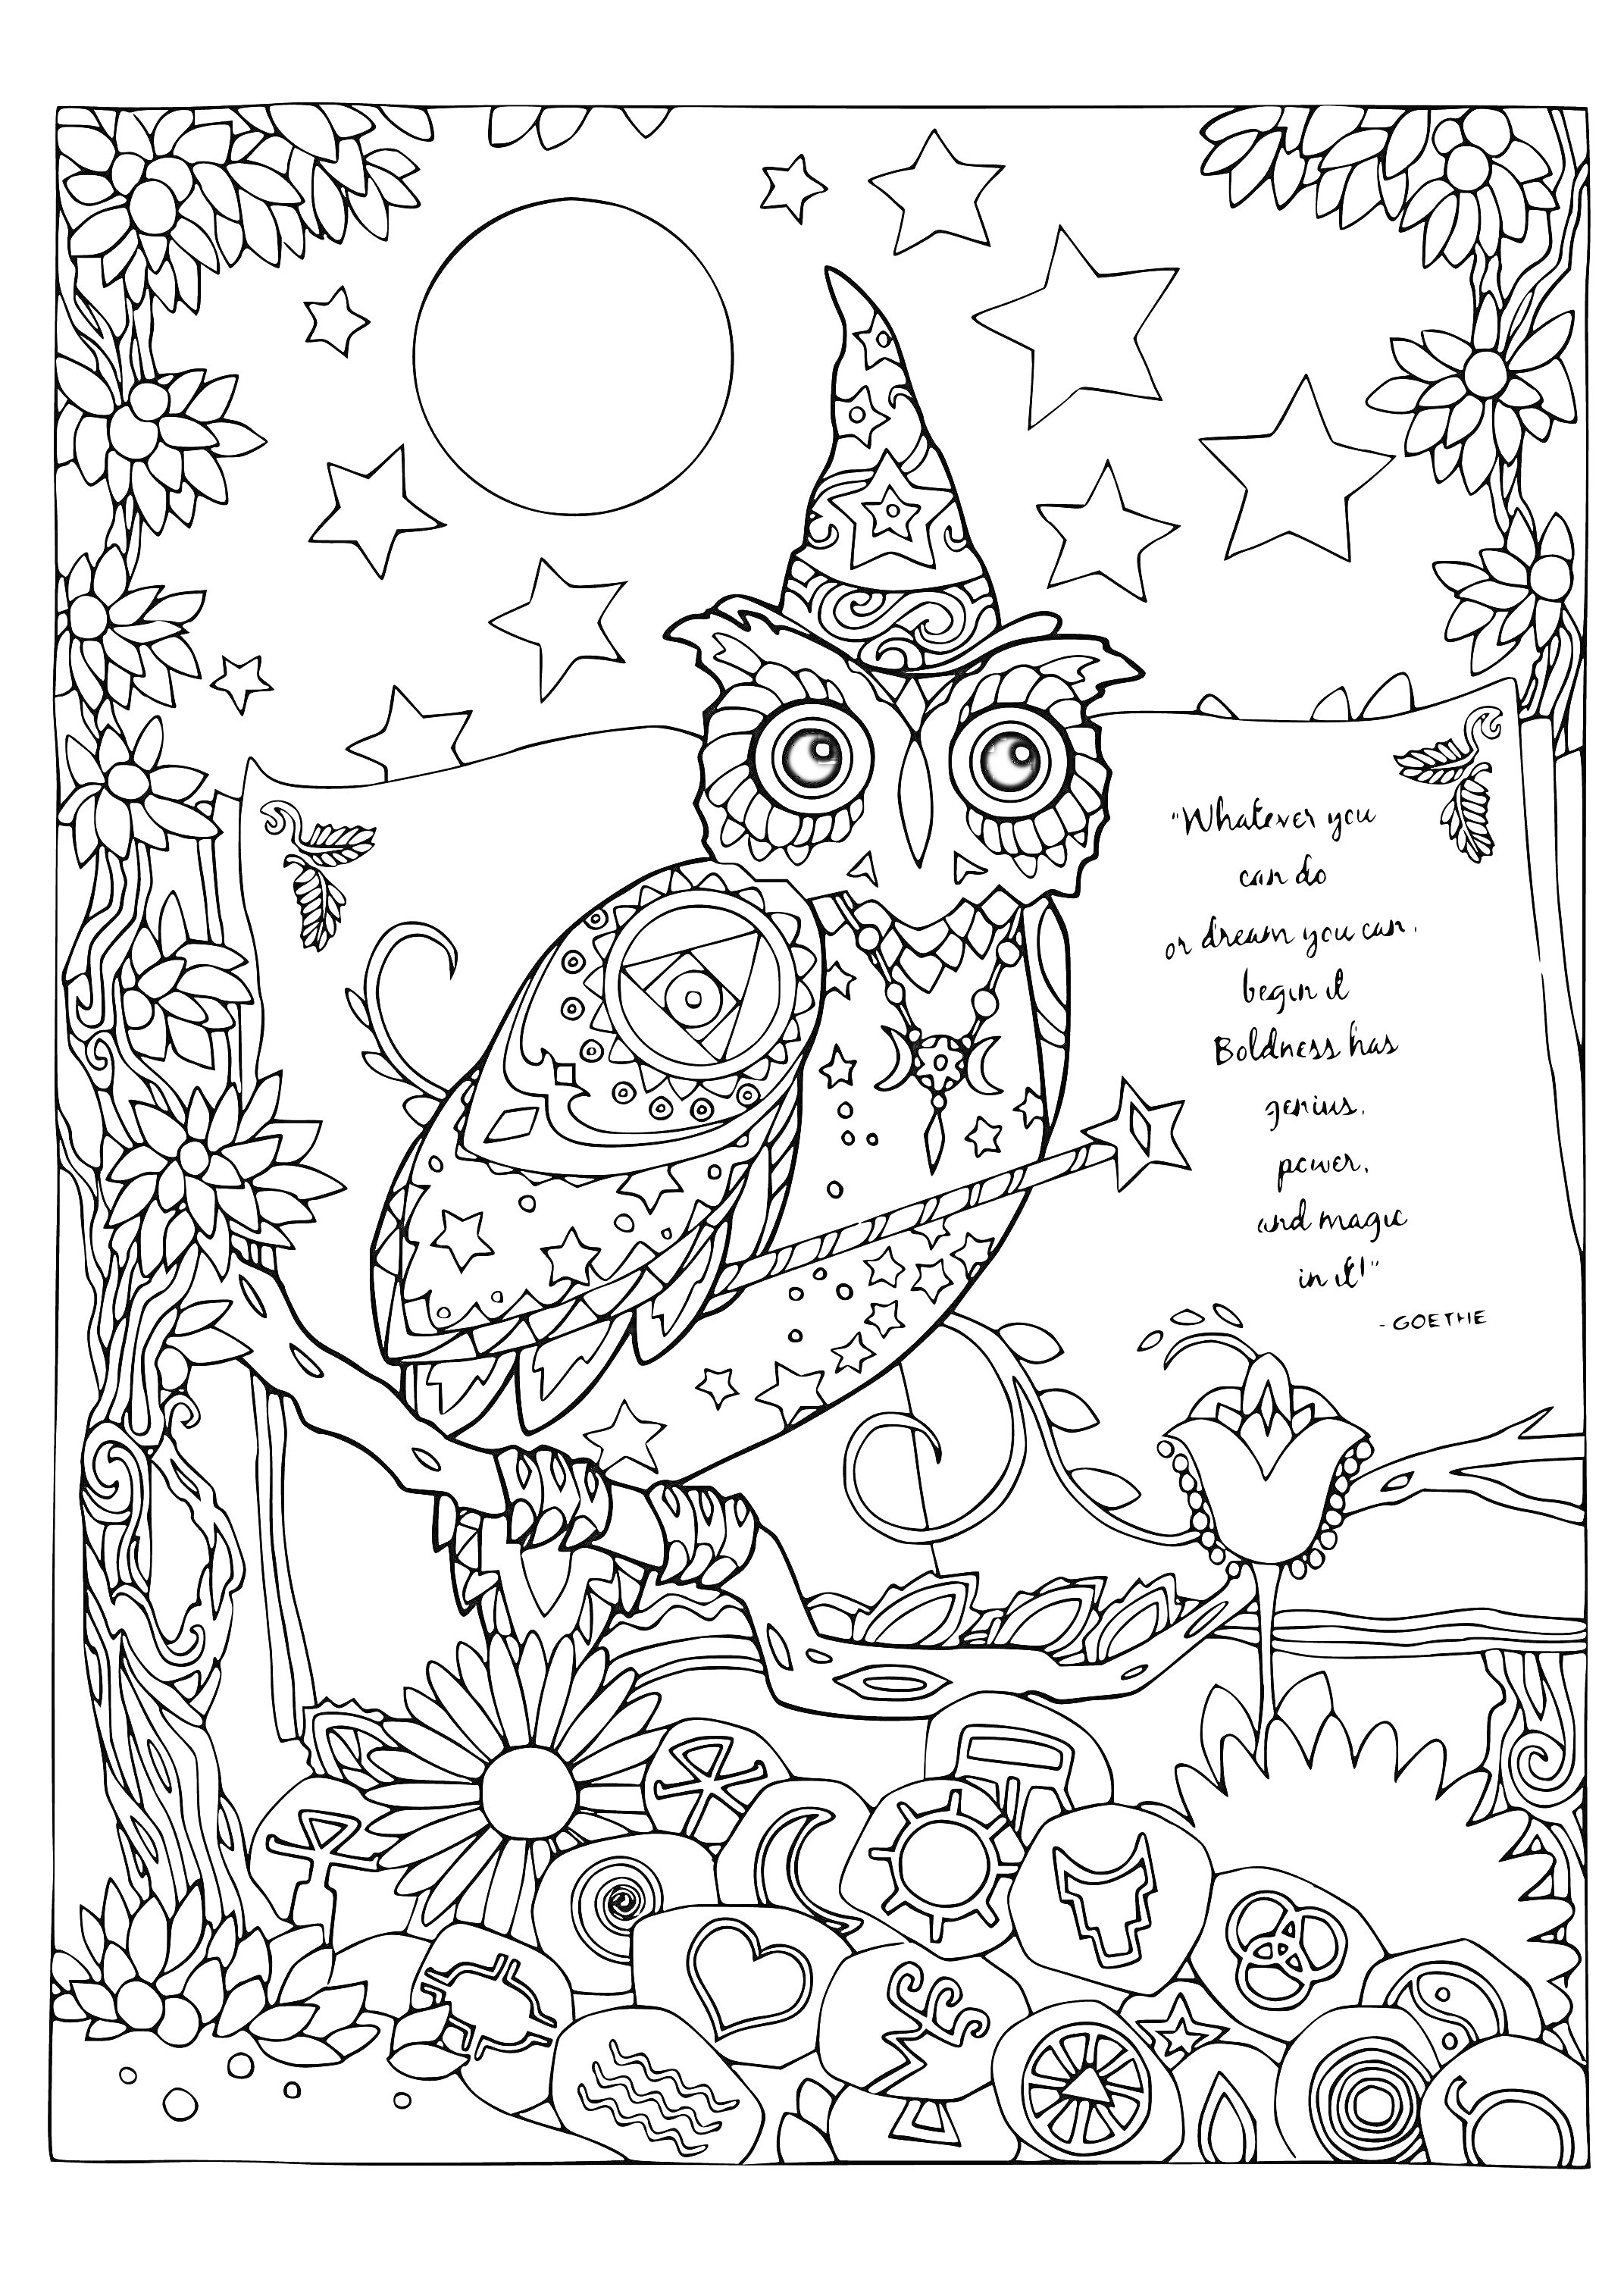 Раскраска Узорчатая сова в колпаке на ветке с цветами и звездами, с мотивирующей надписью